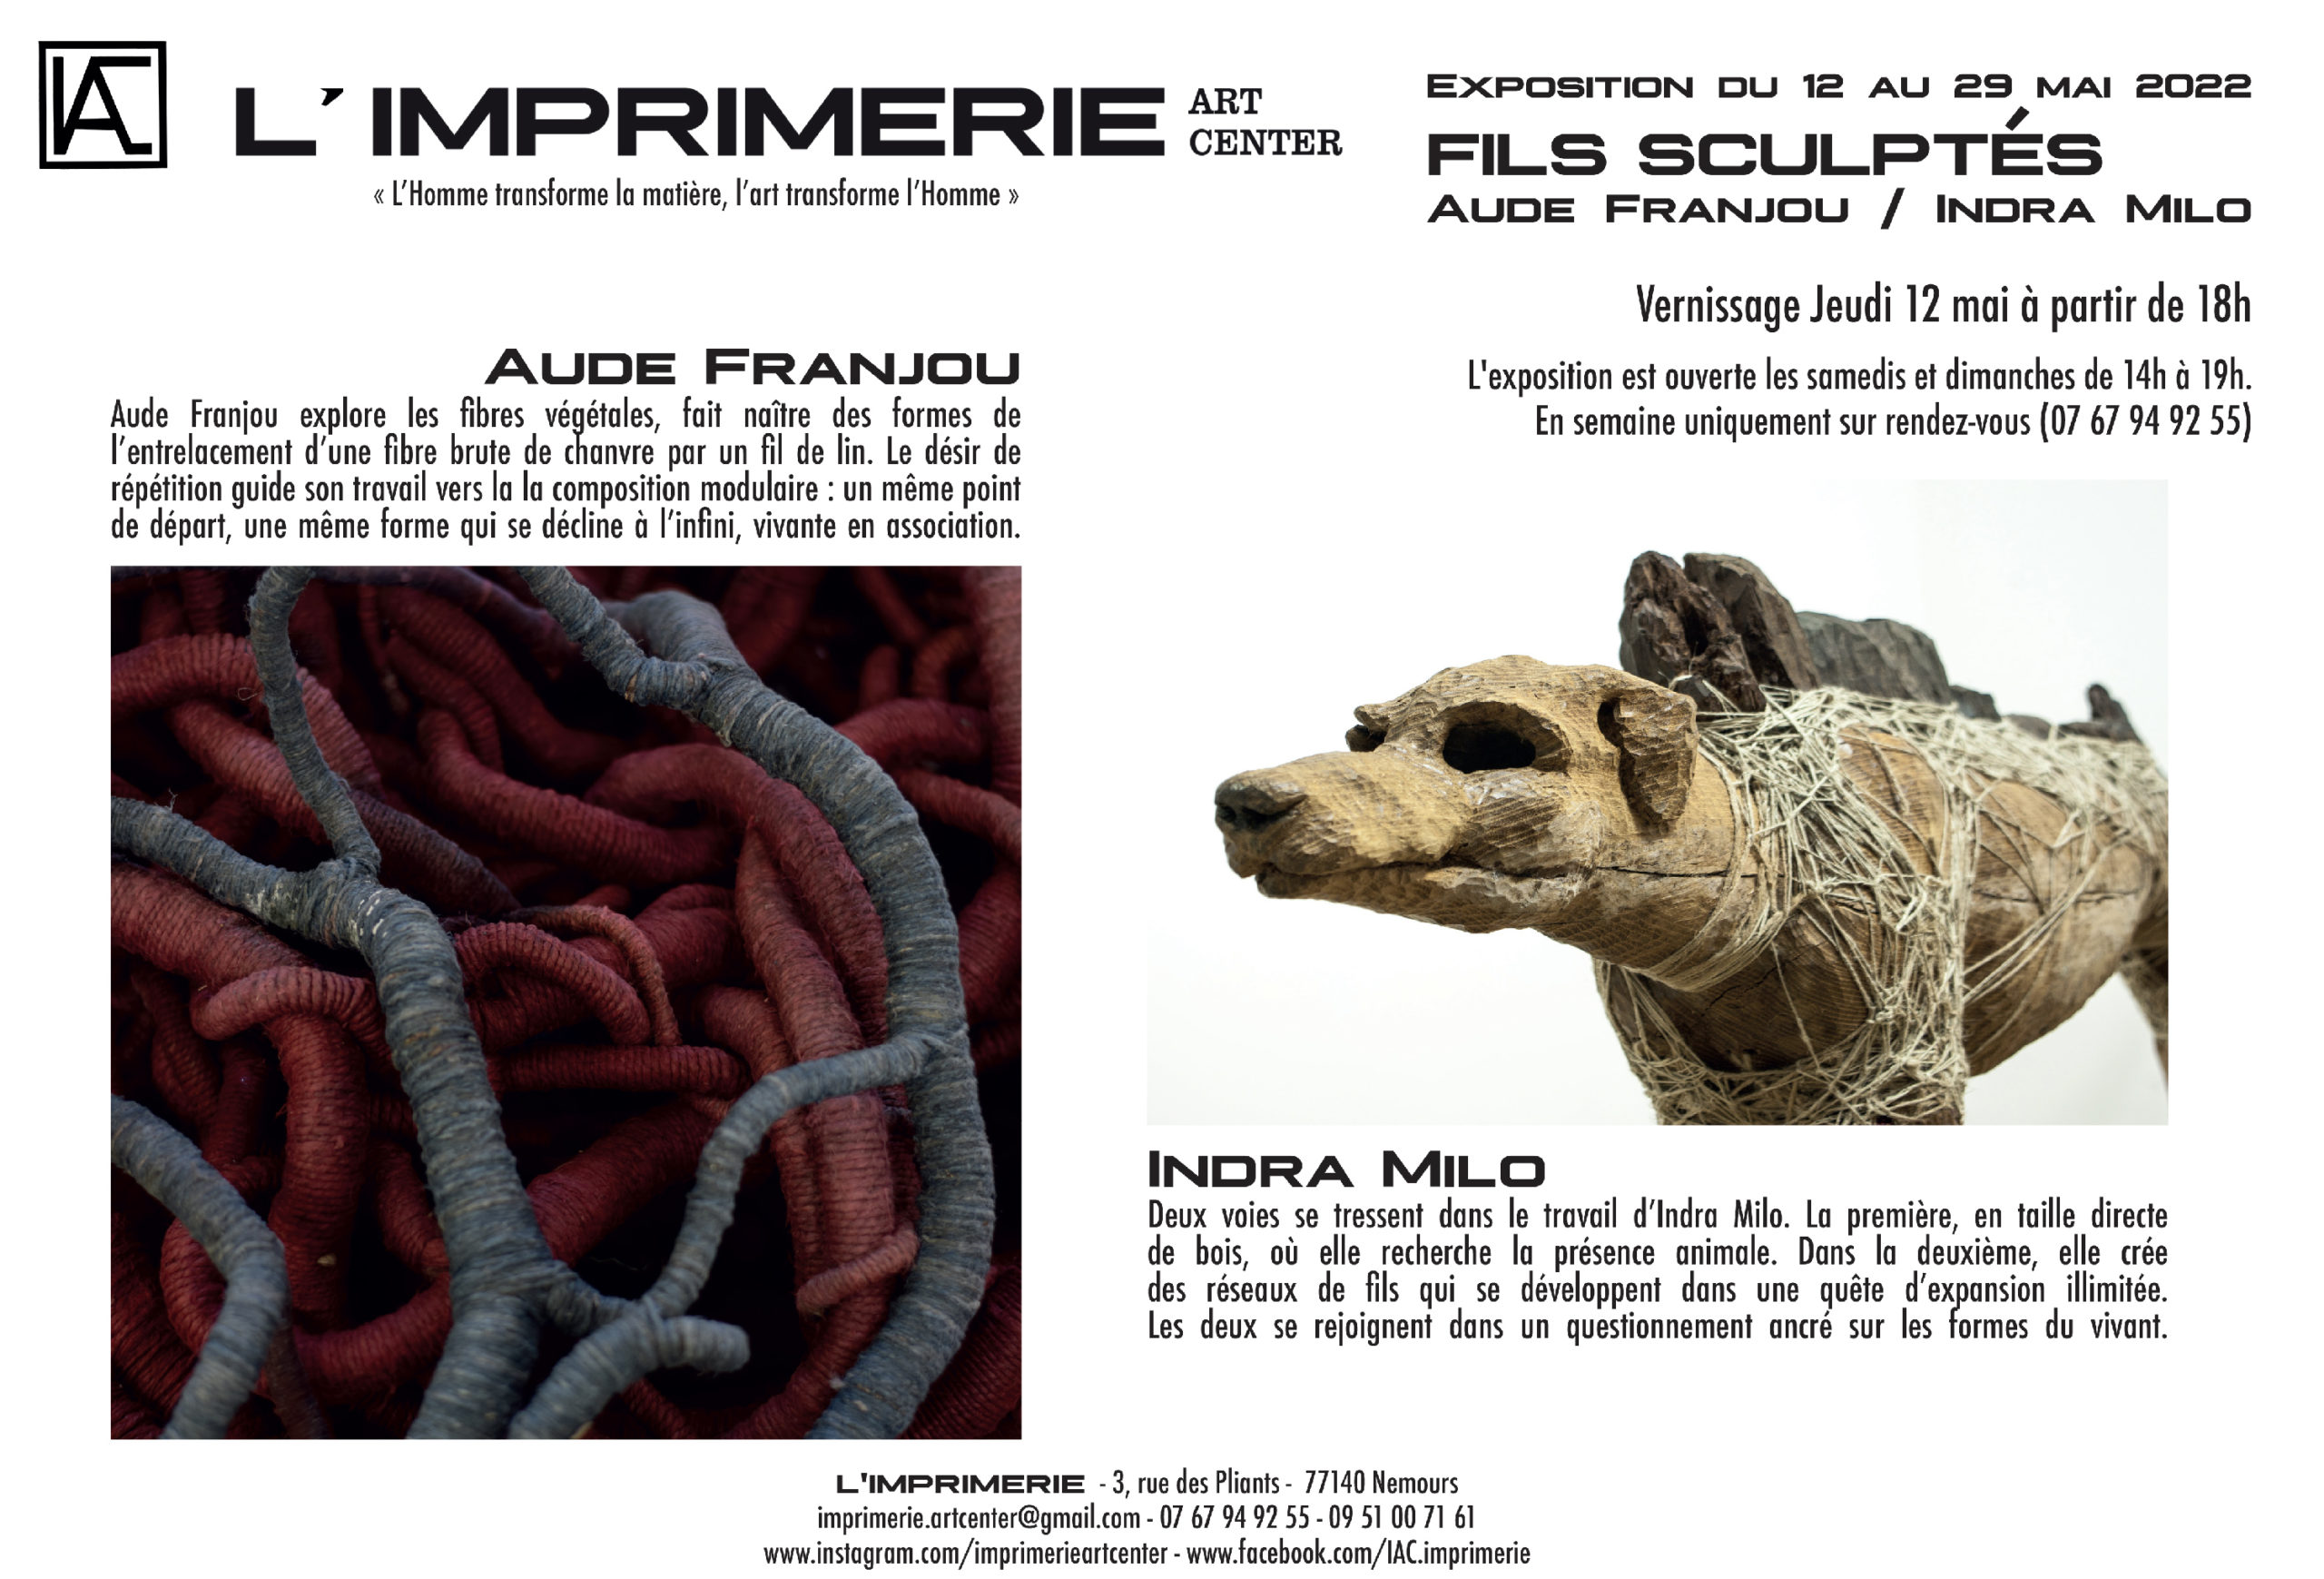 FILS SCULPTÉS : Aude Franjou / Indra Milo – exposition du 12 au 29 mai 2022  à l’Imprimerie Art Center